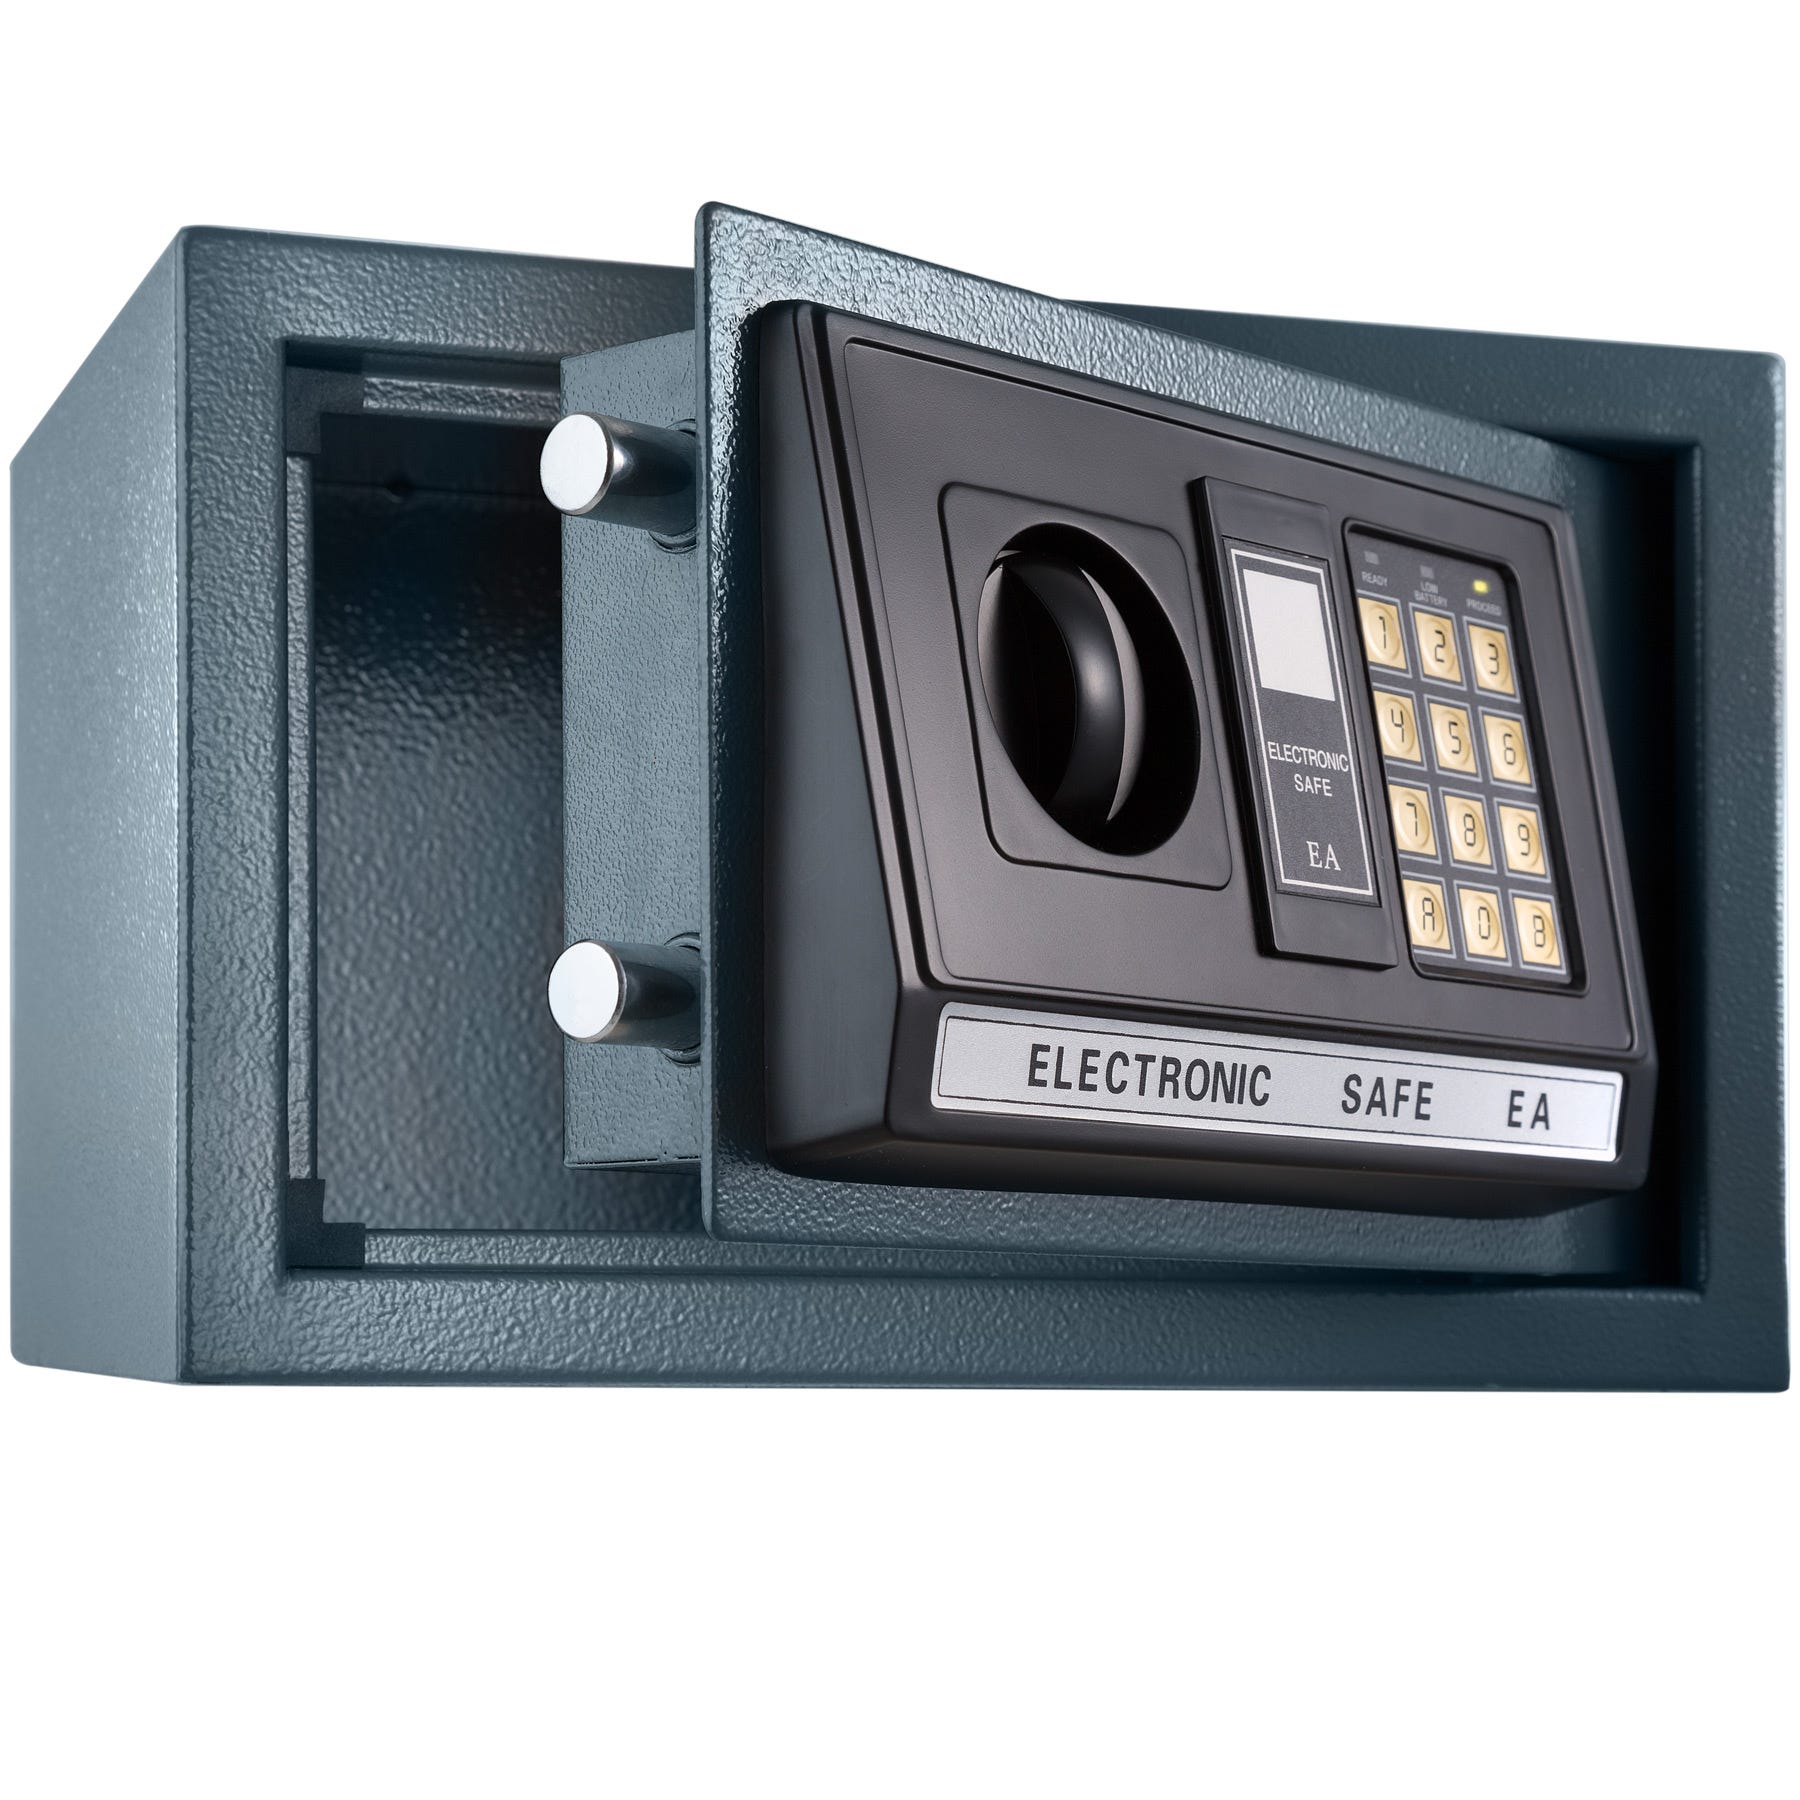 Tectake Caja fuerte electrónica + llave de seguridad modelo 1